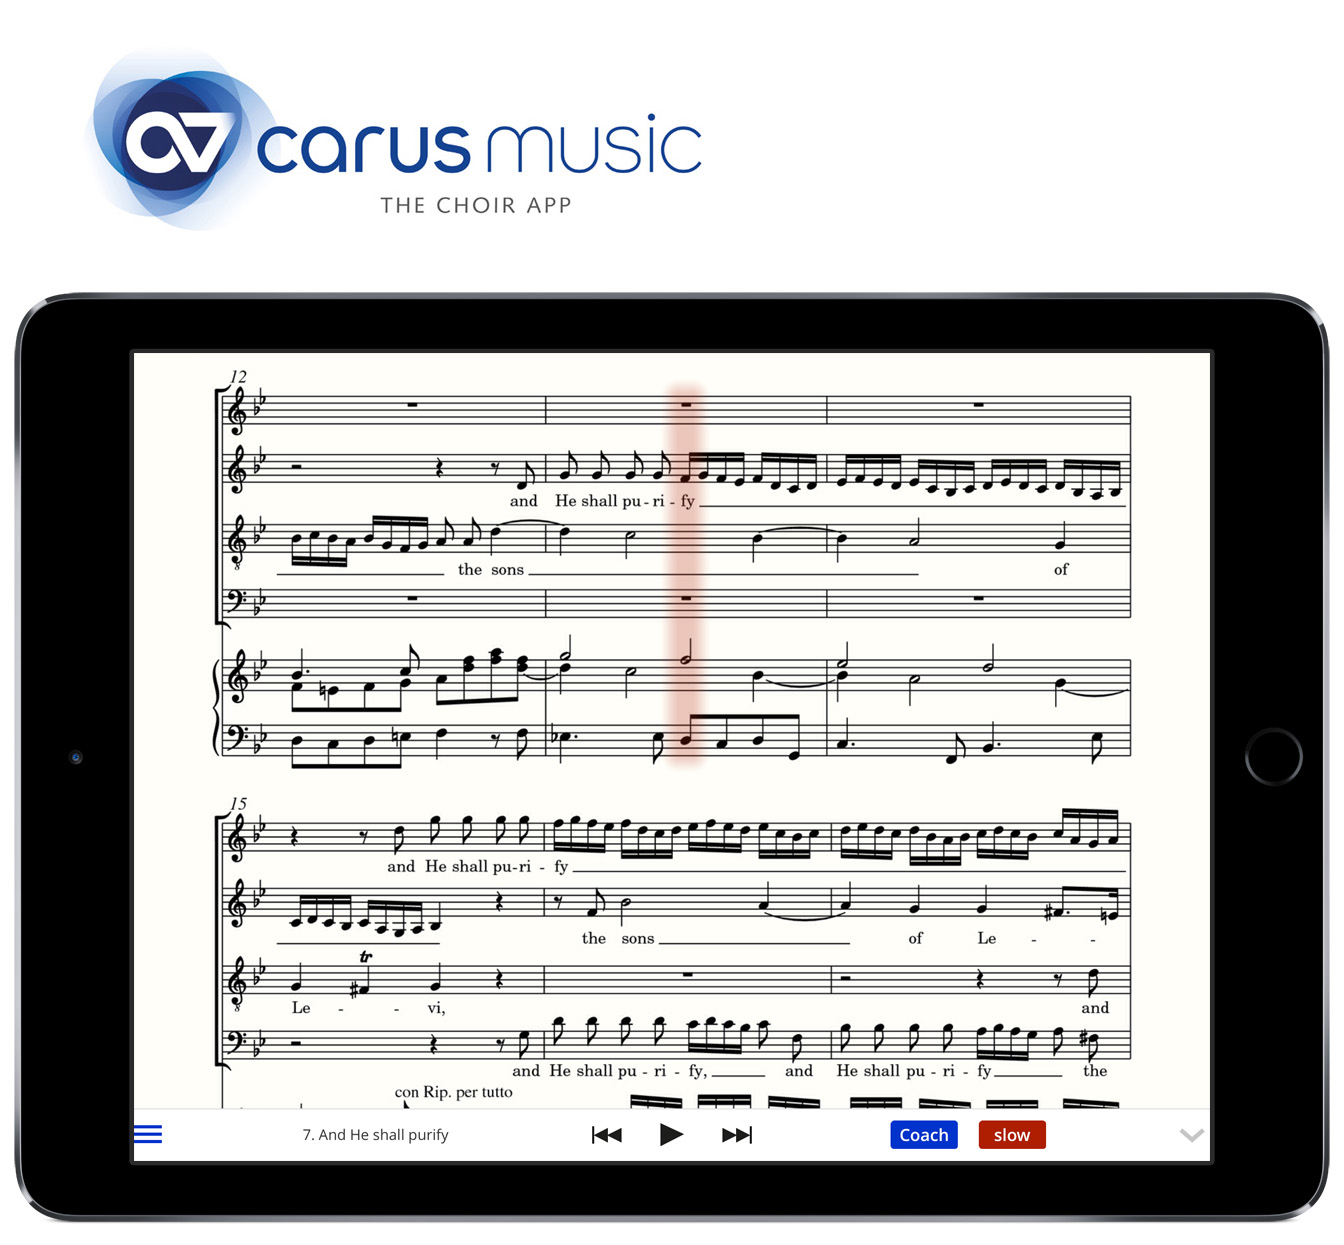 Bayern-24/7.de - Bayern Infos & Bayern Tipps | Mit carus music, der Chor-App, erreicht das Chorstimmenben eine neue, digitale Dimension.